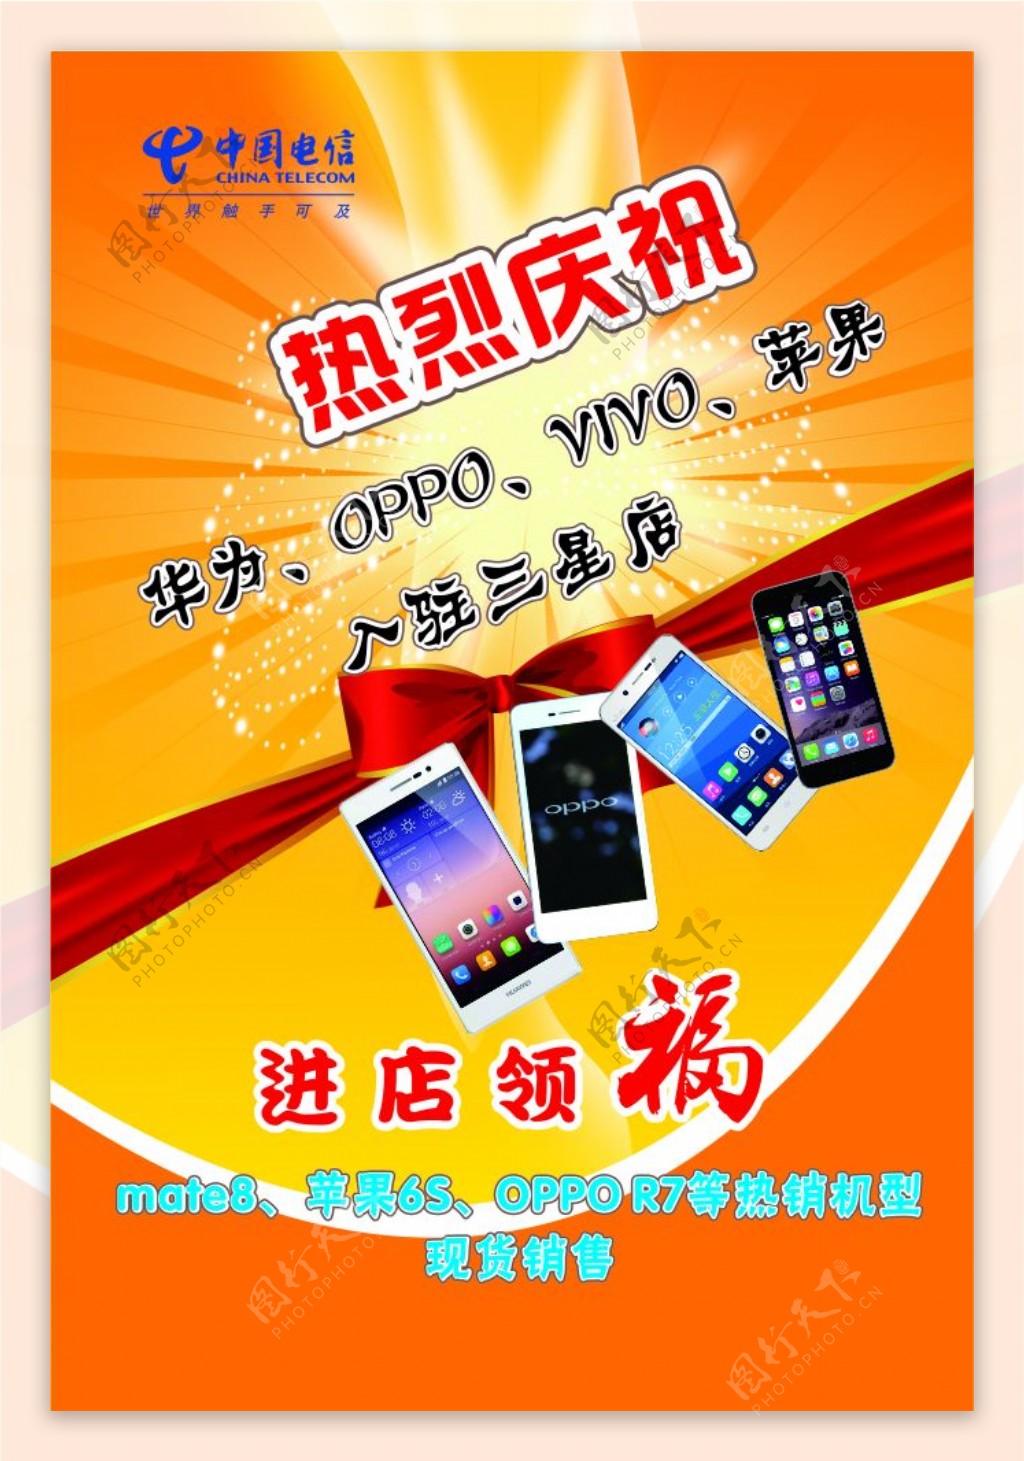 中国电信手机入驻三星店写真海报